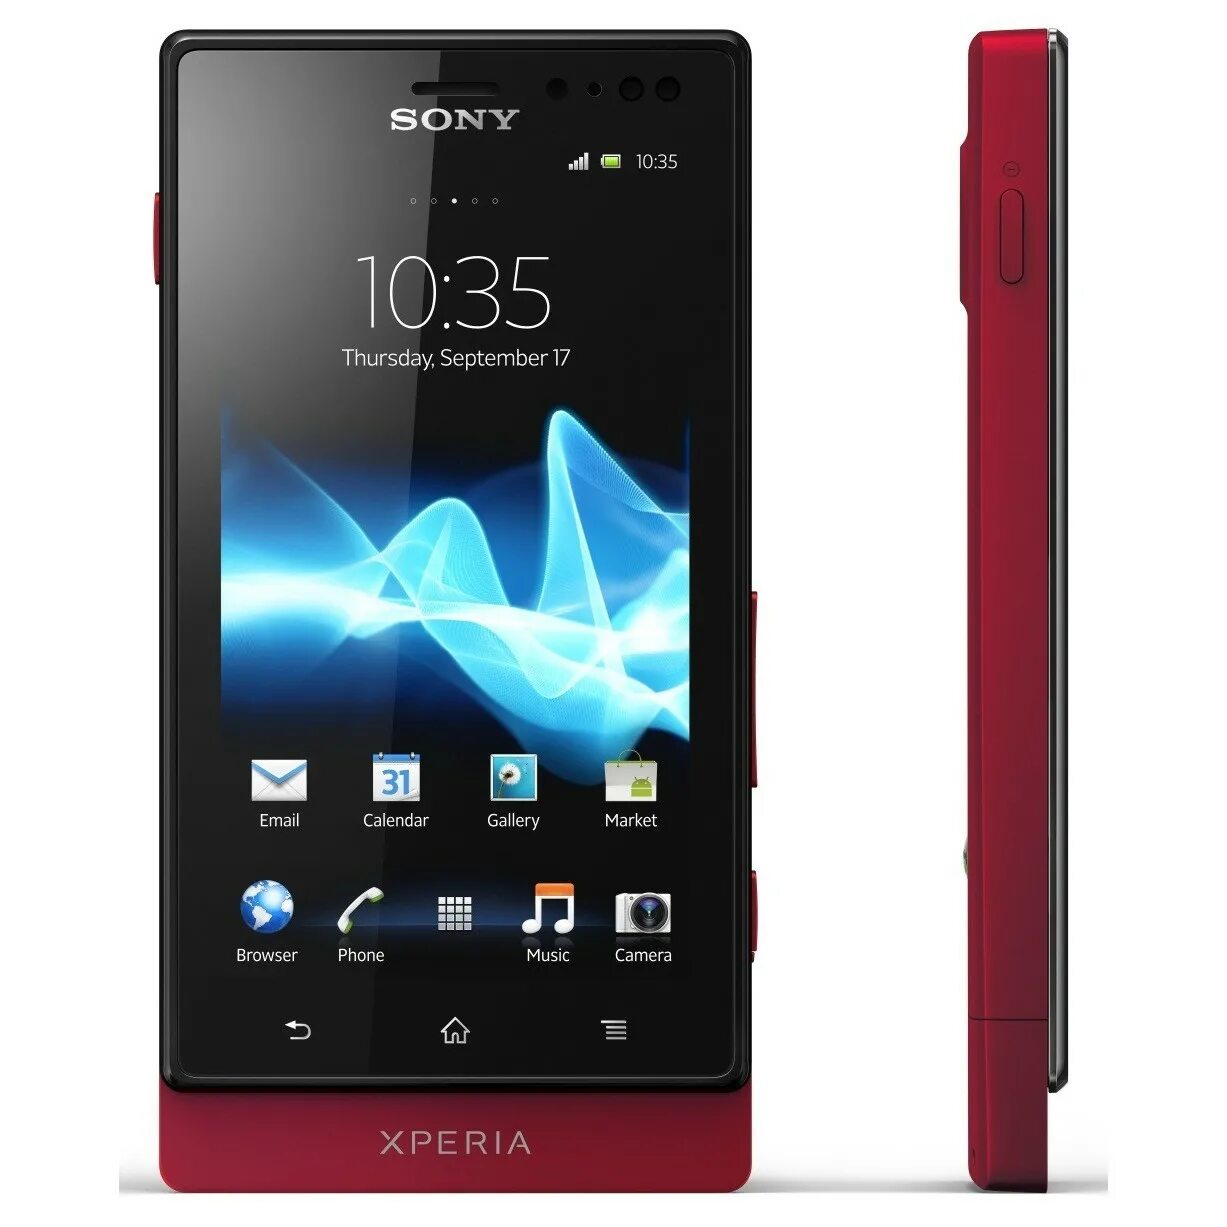 Sony xperia спб. Sony Xperia mt27i. Sony Xperia sola. Sony Xperia sola mt27i. Sony Ericsson Xperia sola mt27i.